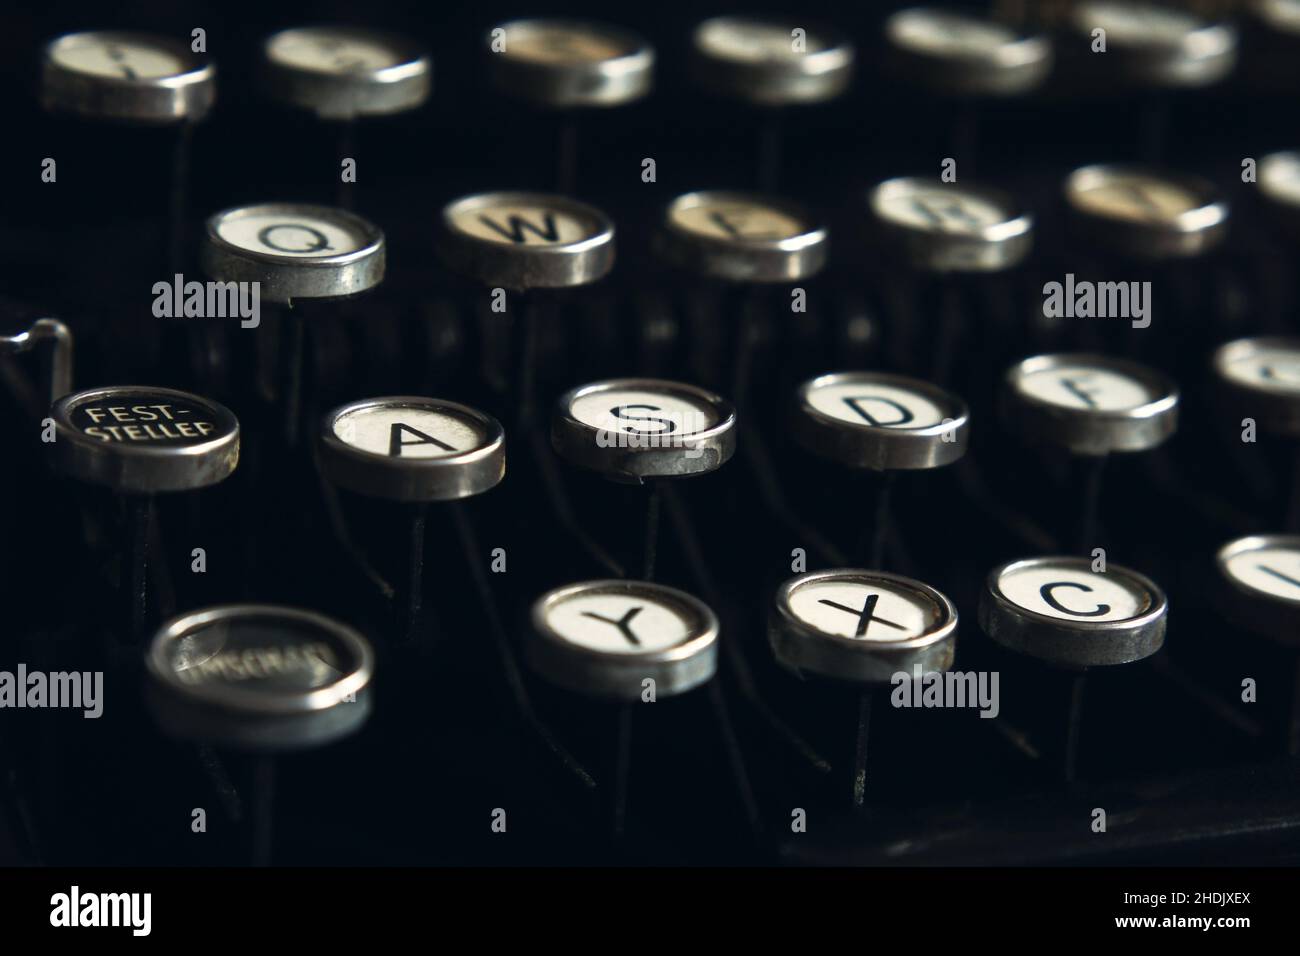 keyboard, typewriter, keyboards, typewriters Stock Photo